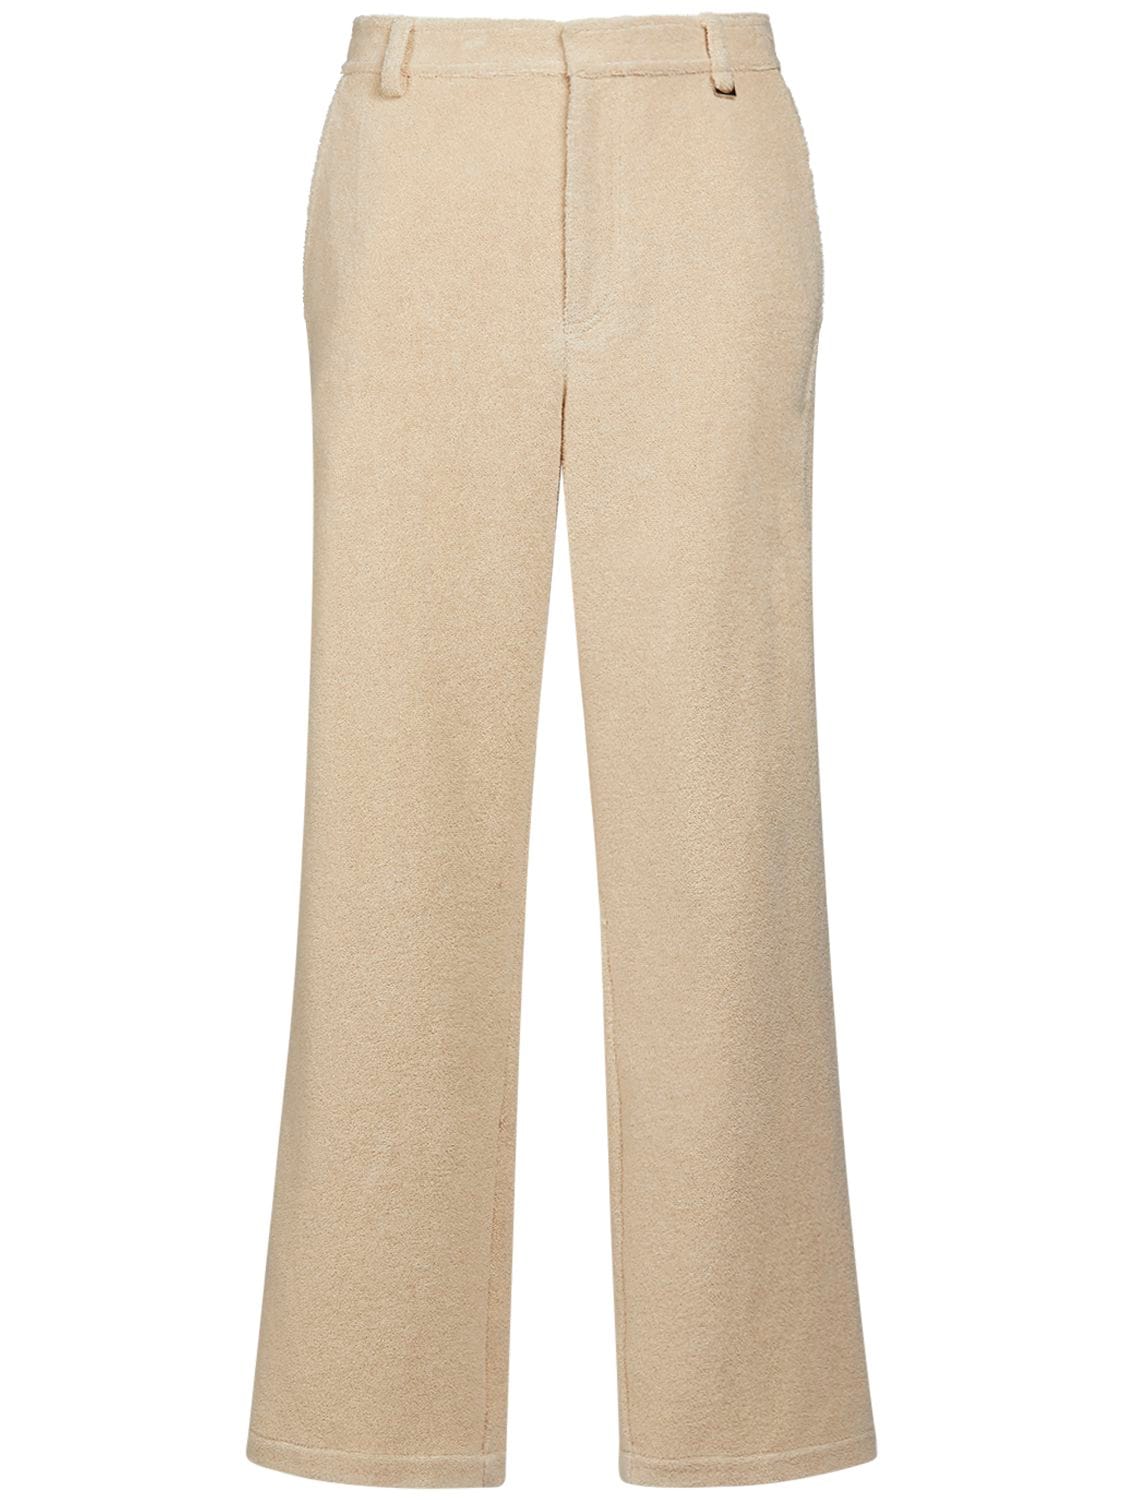 Le Banho Cotton Pants